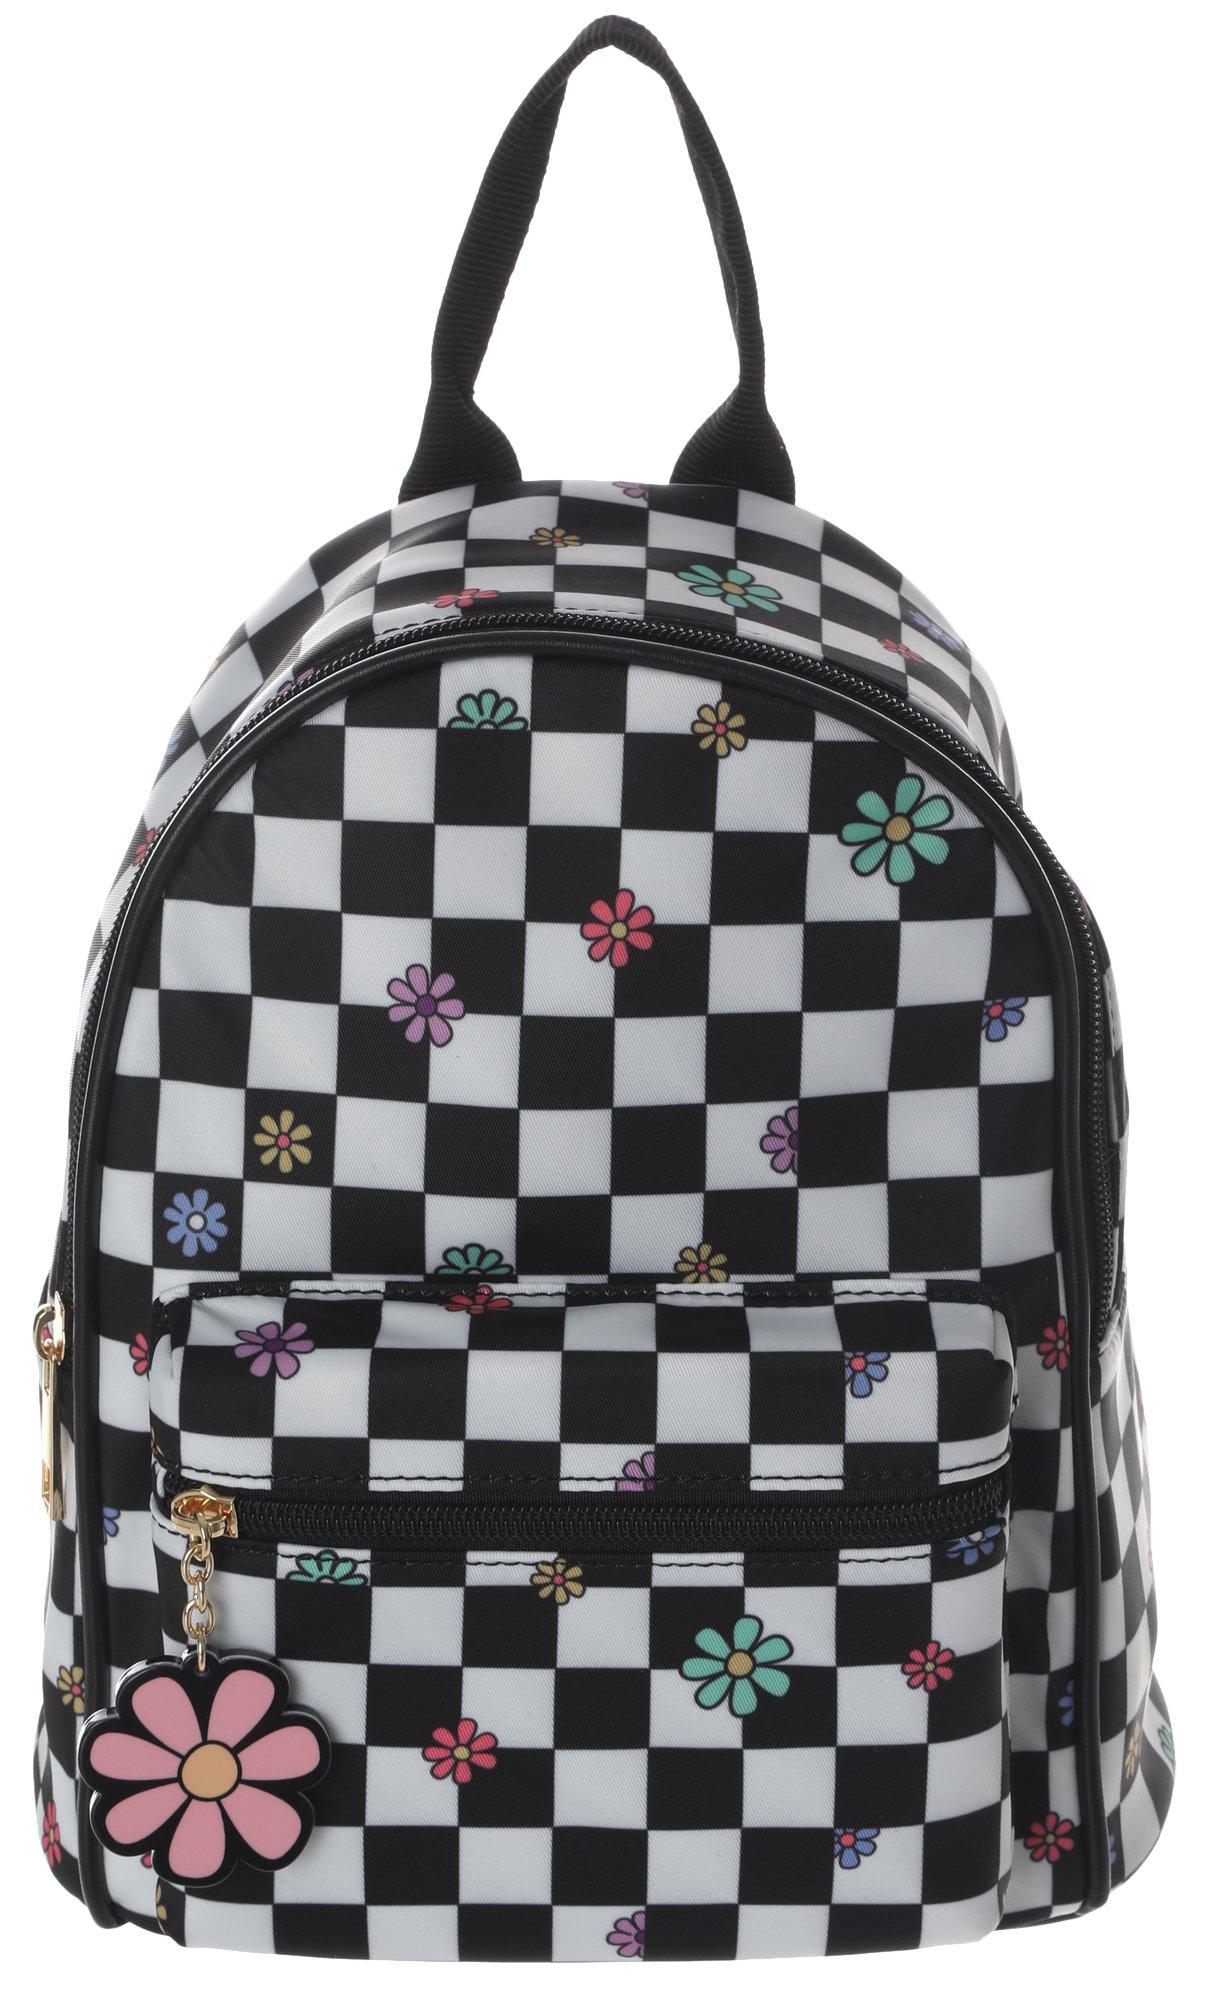 Checkered Flower Nylon Mini Backpack - Black/White